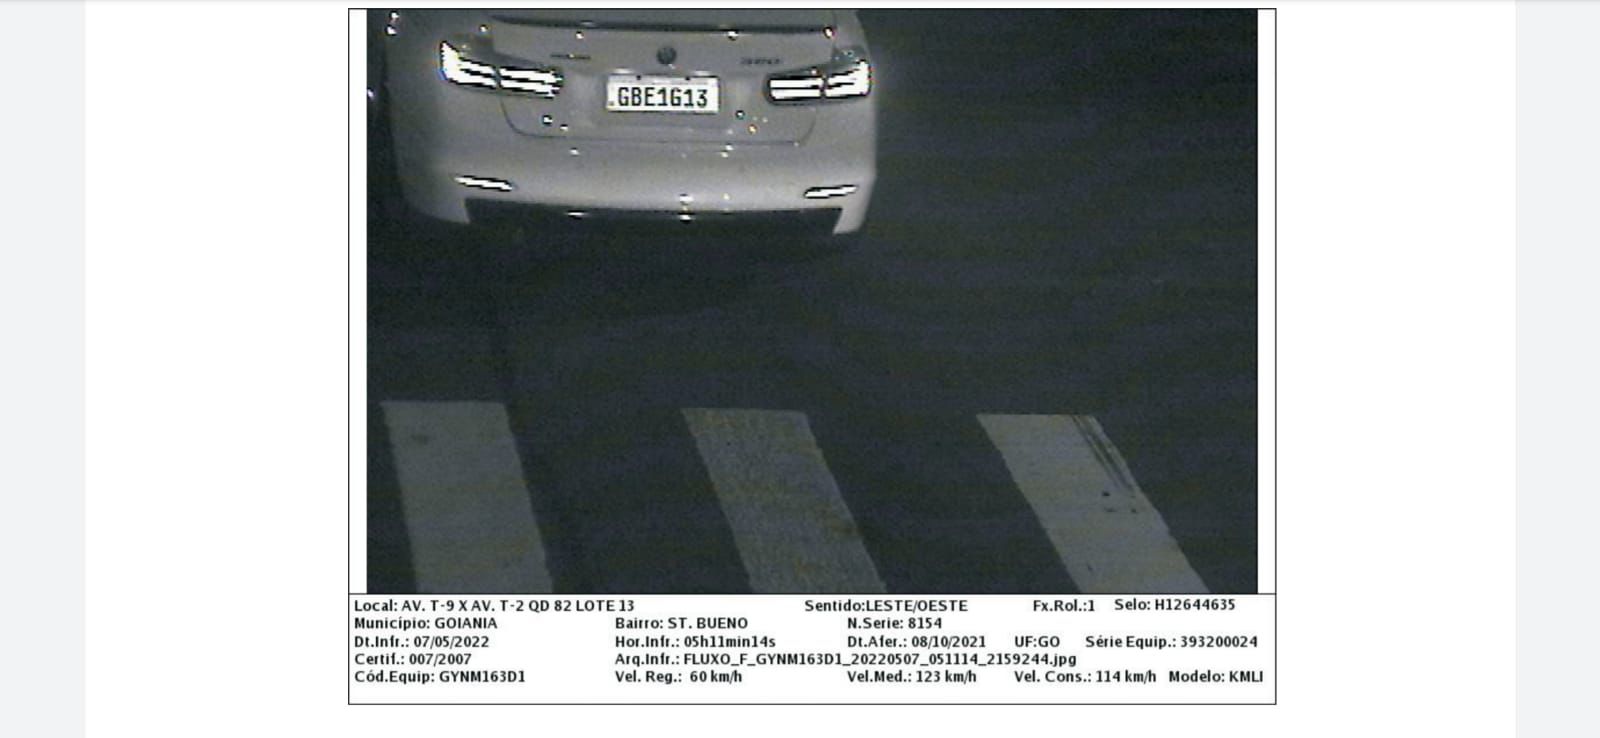 Carro que participou de racha em Goiânia foi fotografado a 123 km/h pouco antes do acidente (Foto: Reprodução)